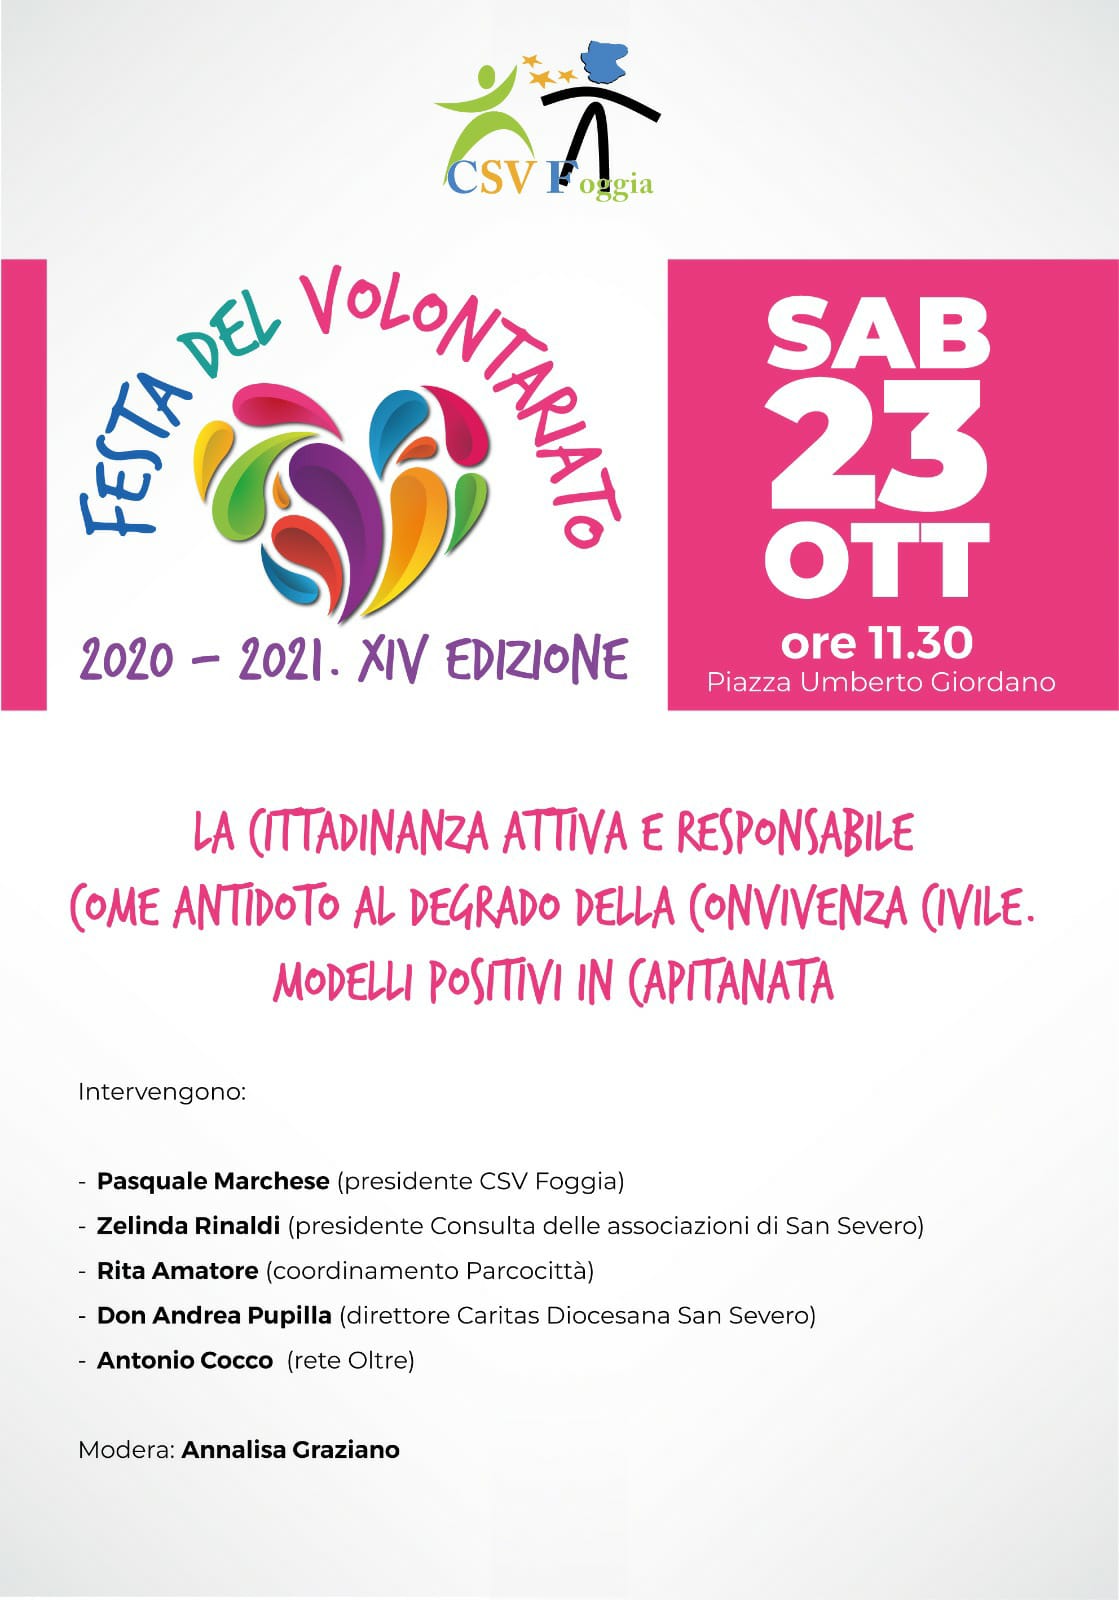 Il Terzo Settore in piazza a Foggia con la Festa del Volontariato. Sabato e domenica nell’isola pedonale.